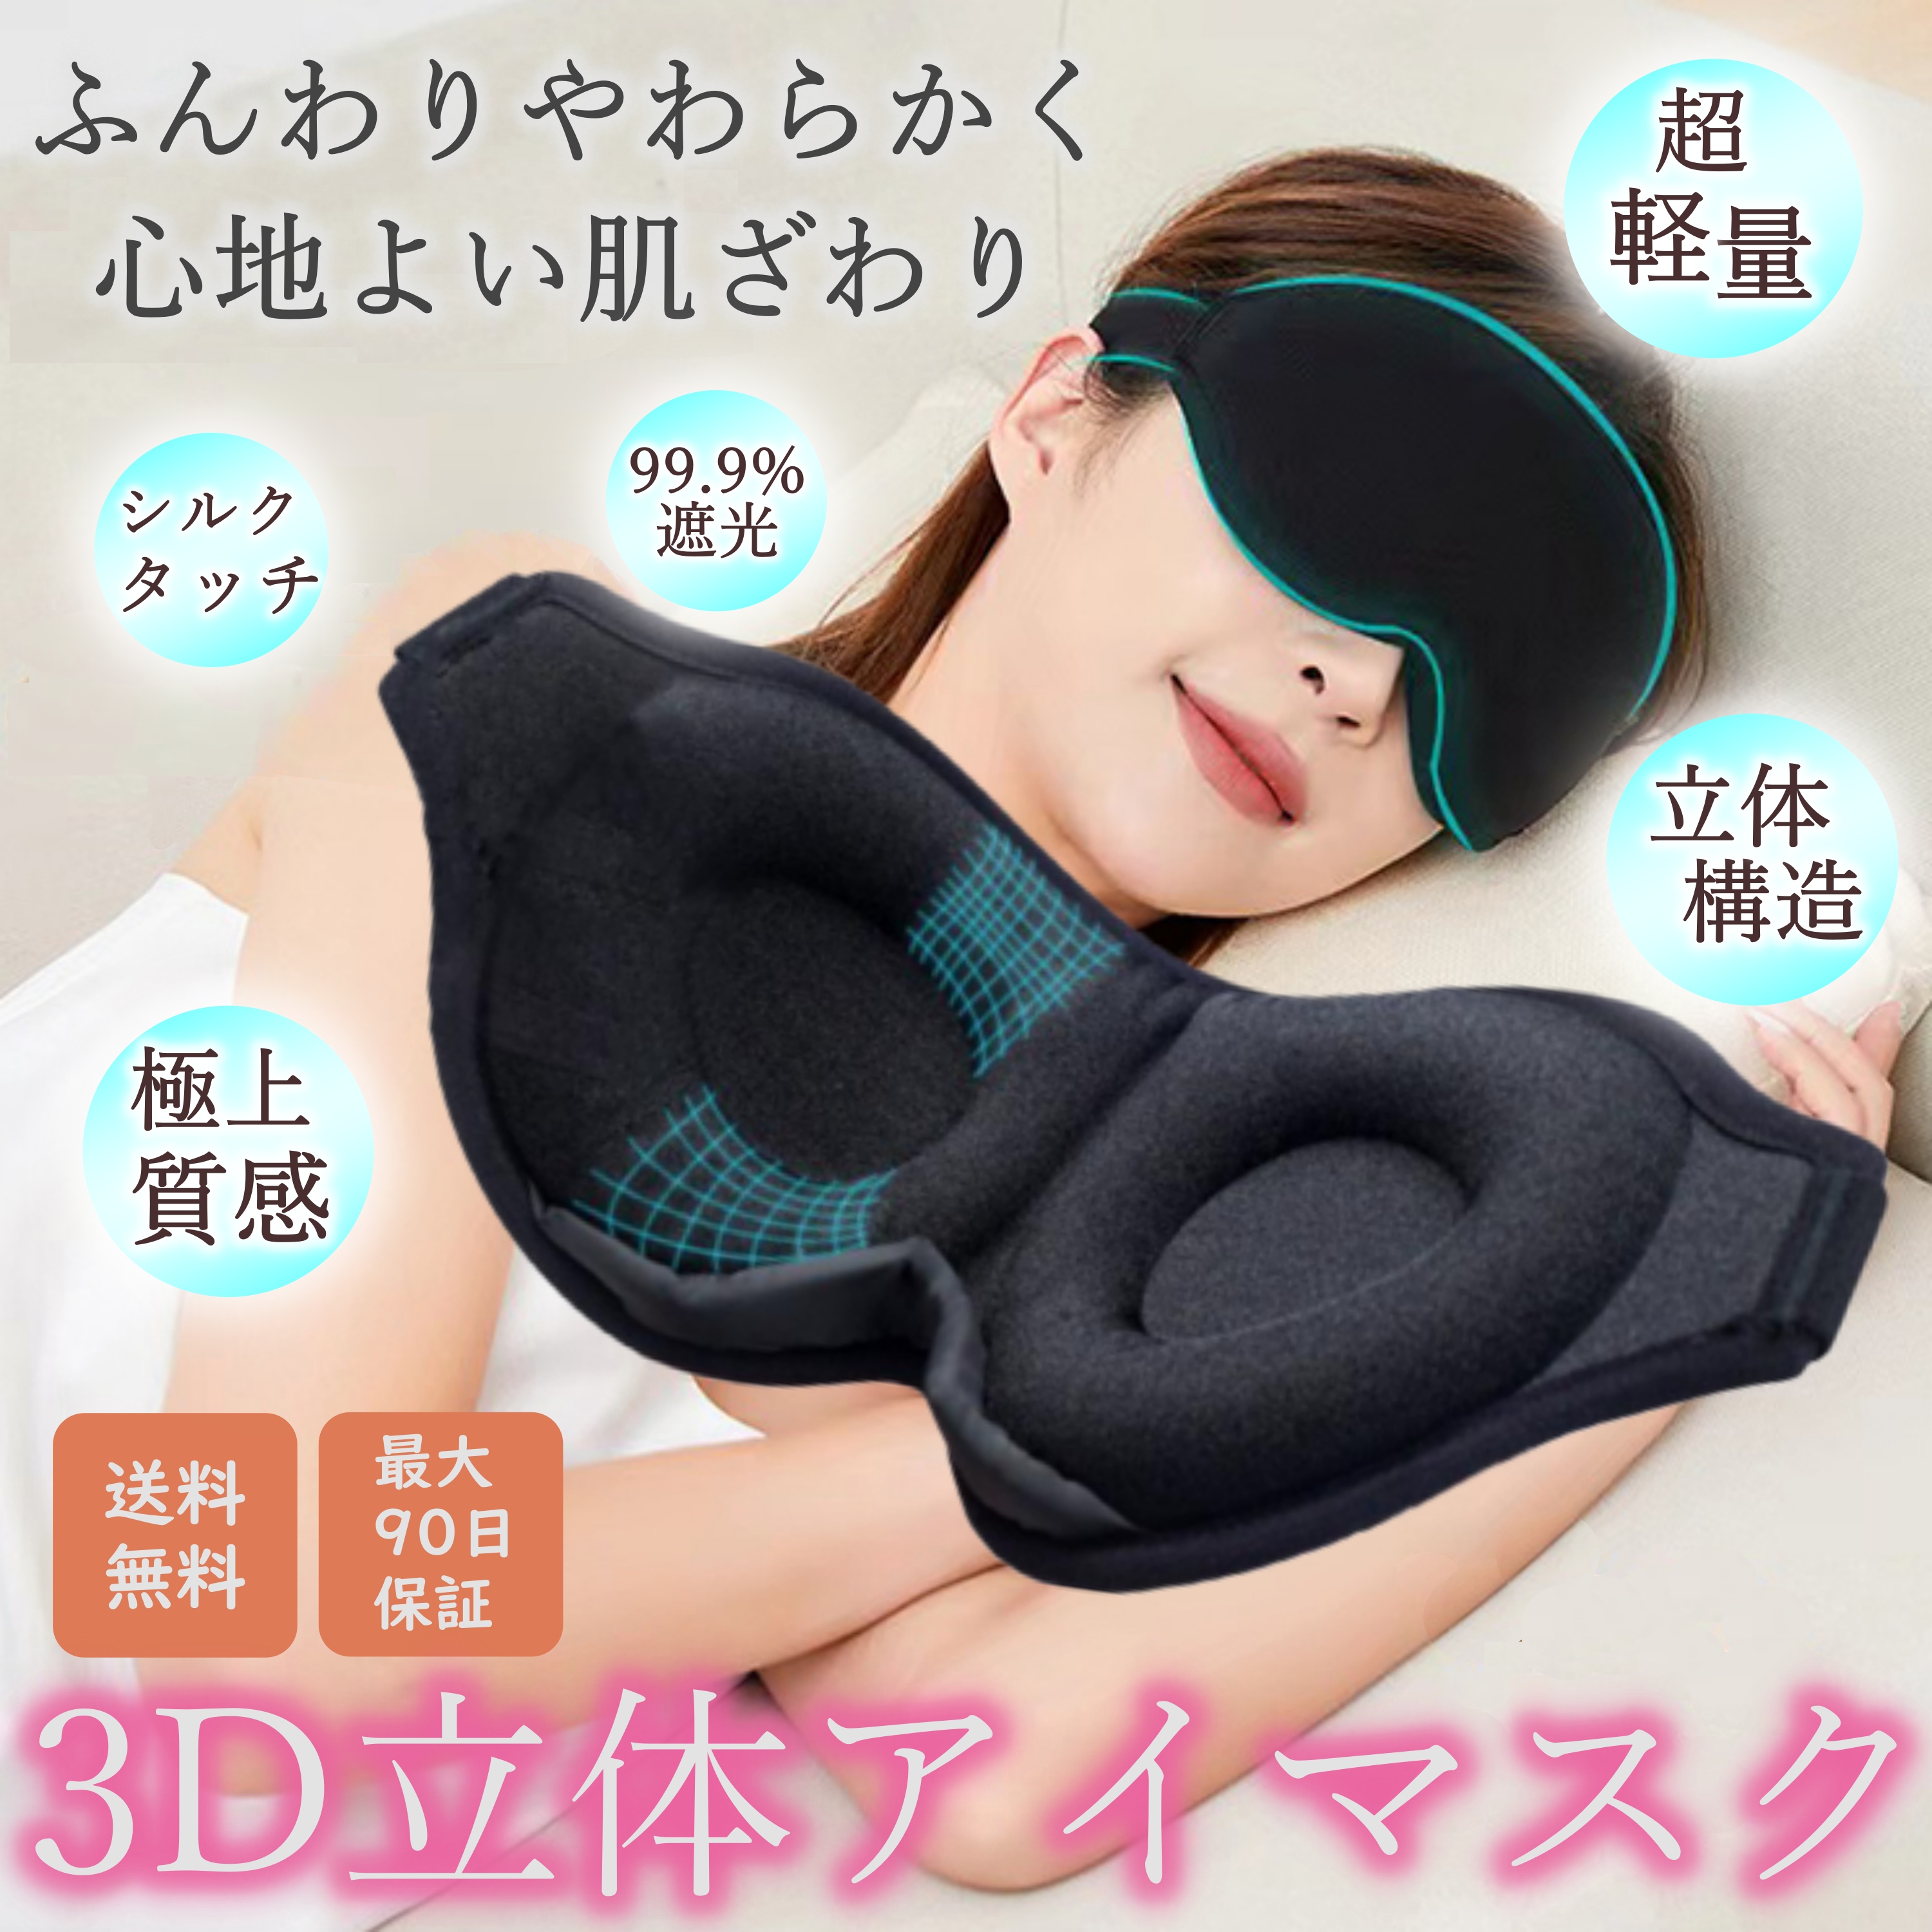 お気に入り】 アイマスク 睡眠 遮光 シルク 3D 立体型 安眠 快眠